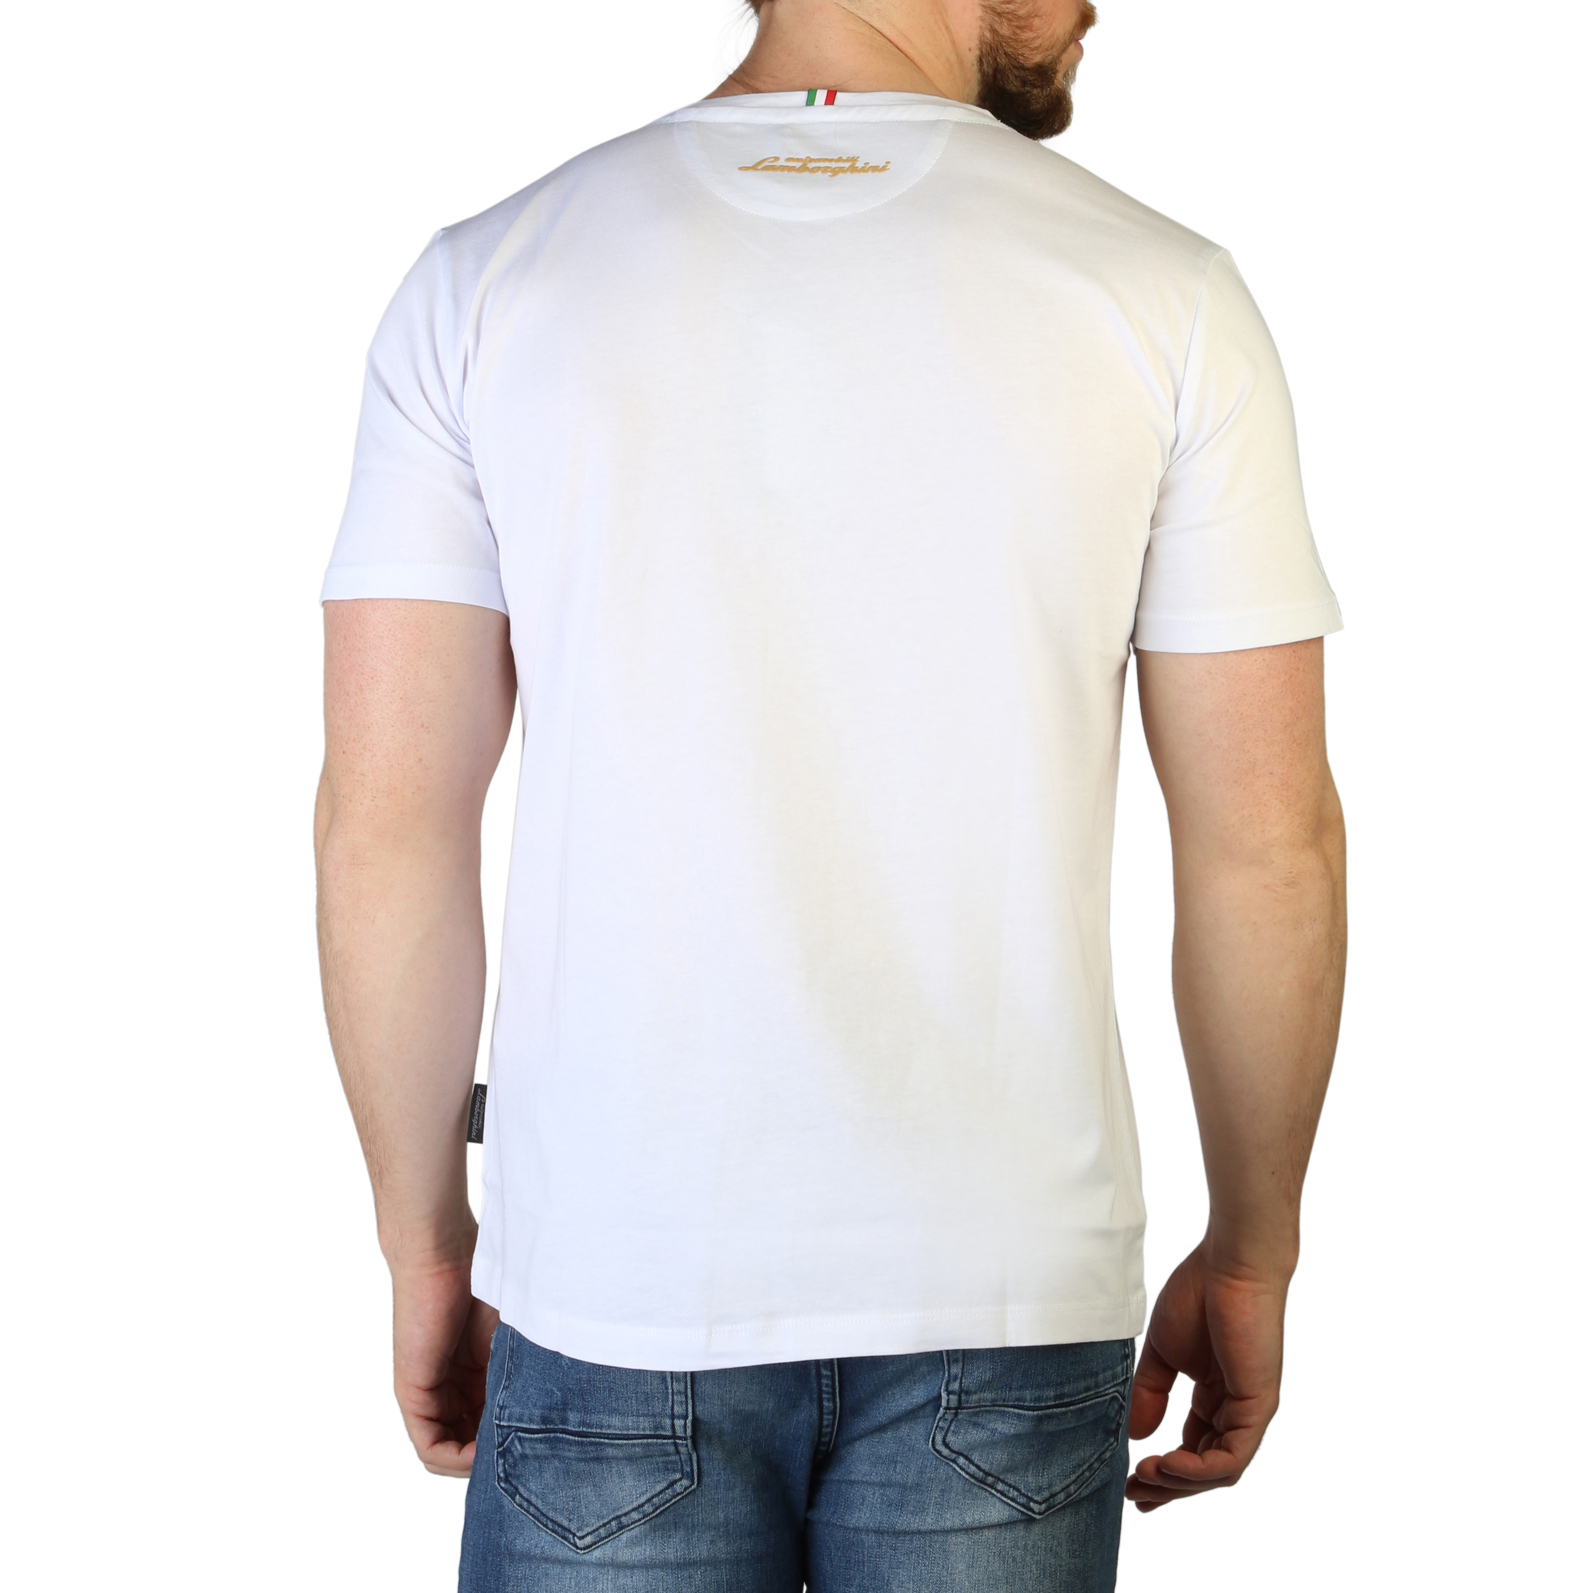 Lamborghini White T-shirts for Men - B3XVB7AI